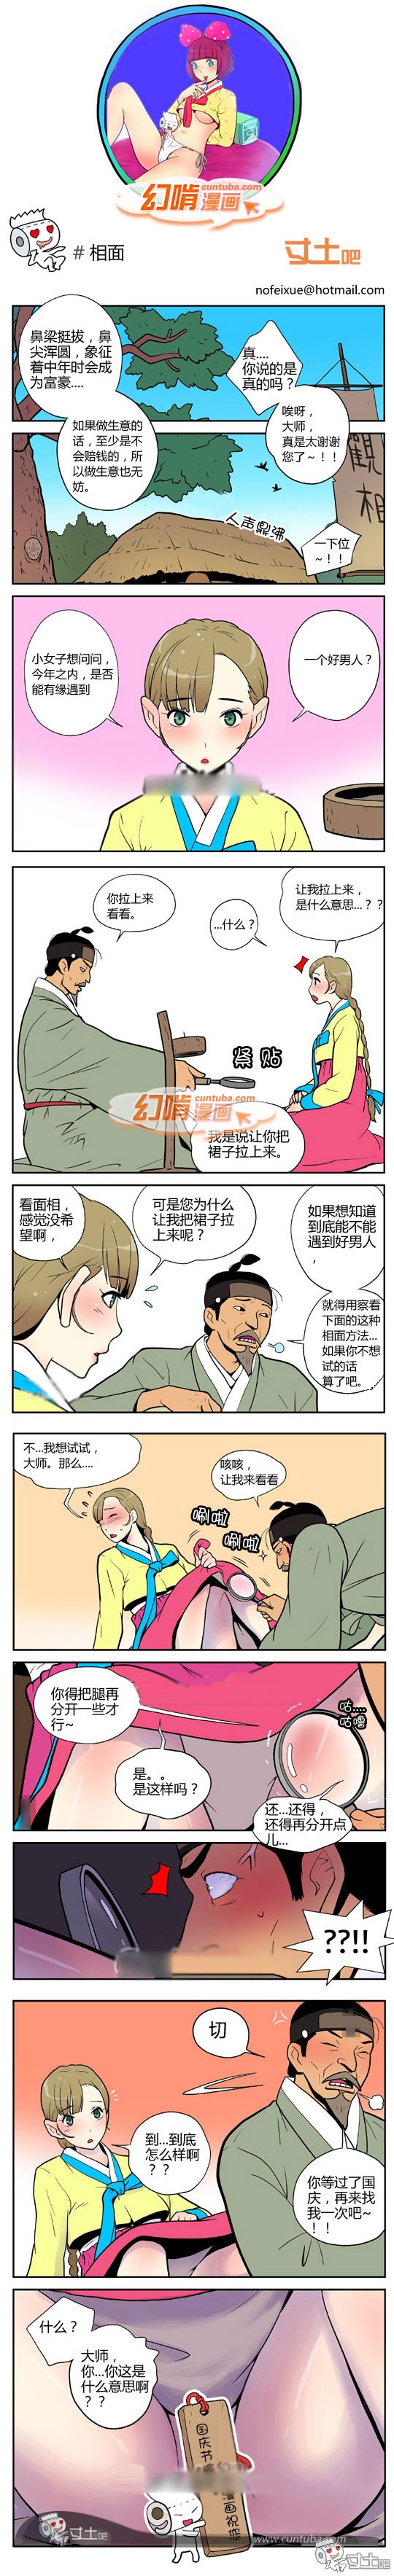 幻啃漫画相面国庆篇